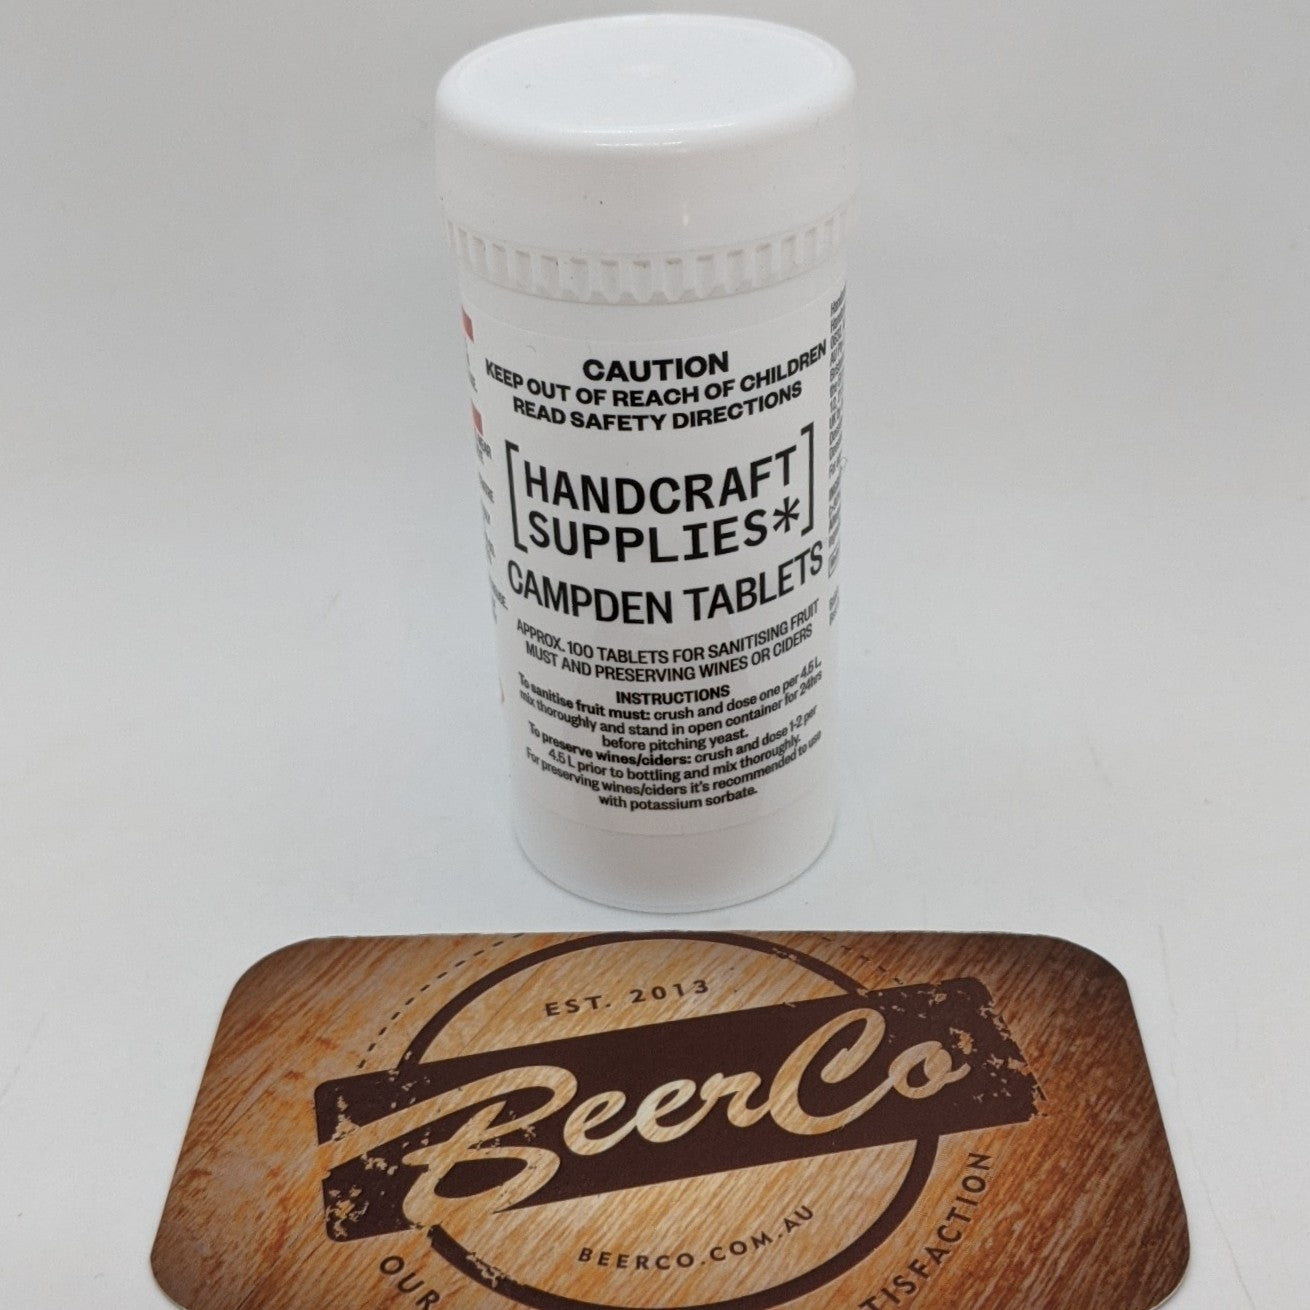 Handcraft Supplies* | Campden Tablets